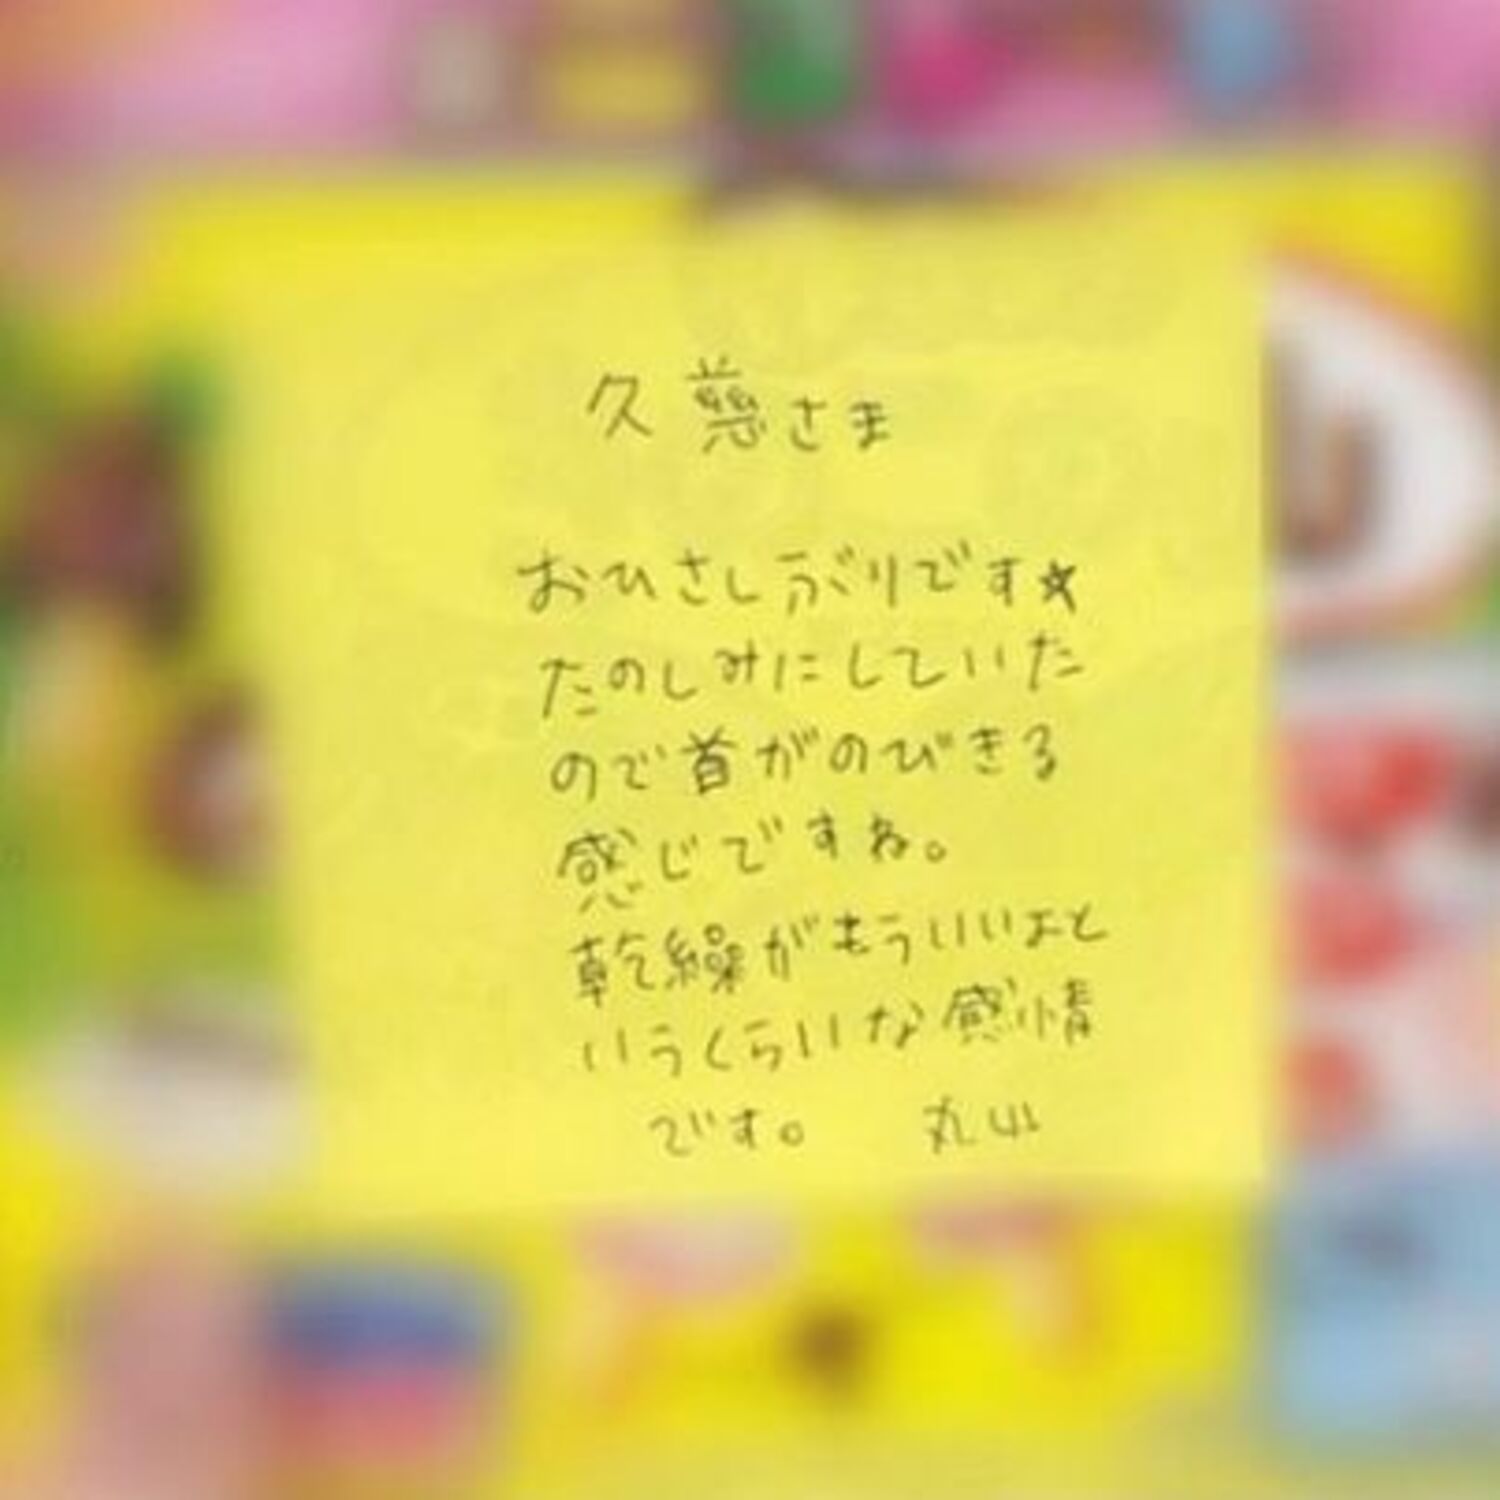 丸山桂里奈が久慈暁子アナへ送った“解読不能な手紙”が話題に「首がのびきる」「乾繰がもういいよ」の画像